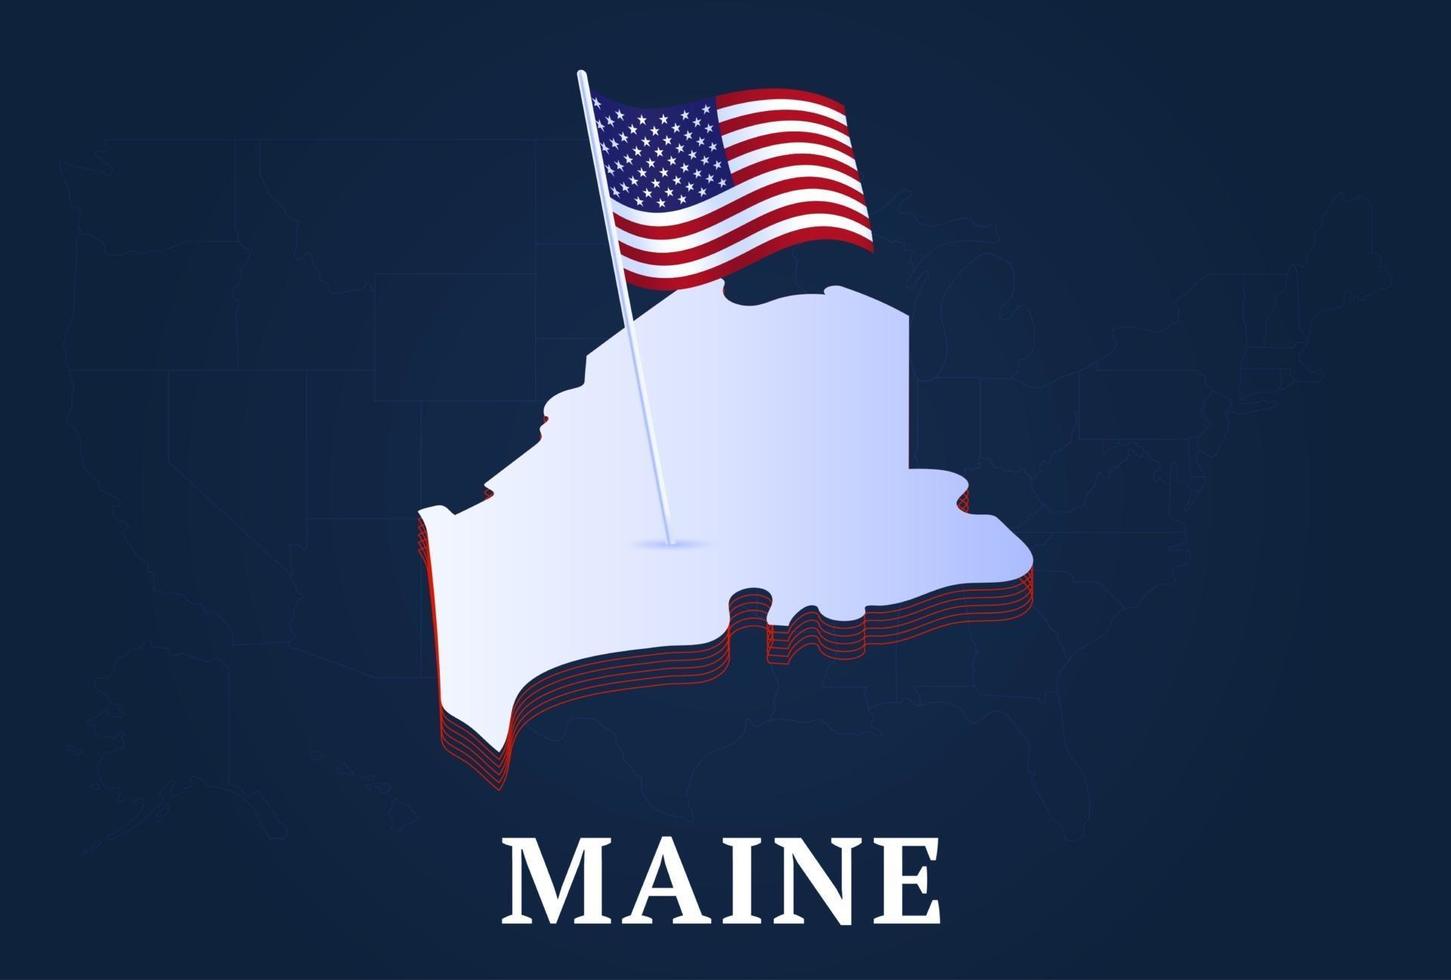 Carte isométrique de l'état du maine et drapeau national des États-Unis forme isométrique 3d de l'illustration vectorielle de l'état américain vecteur